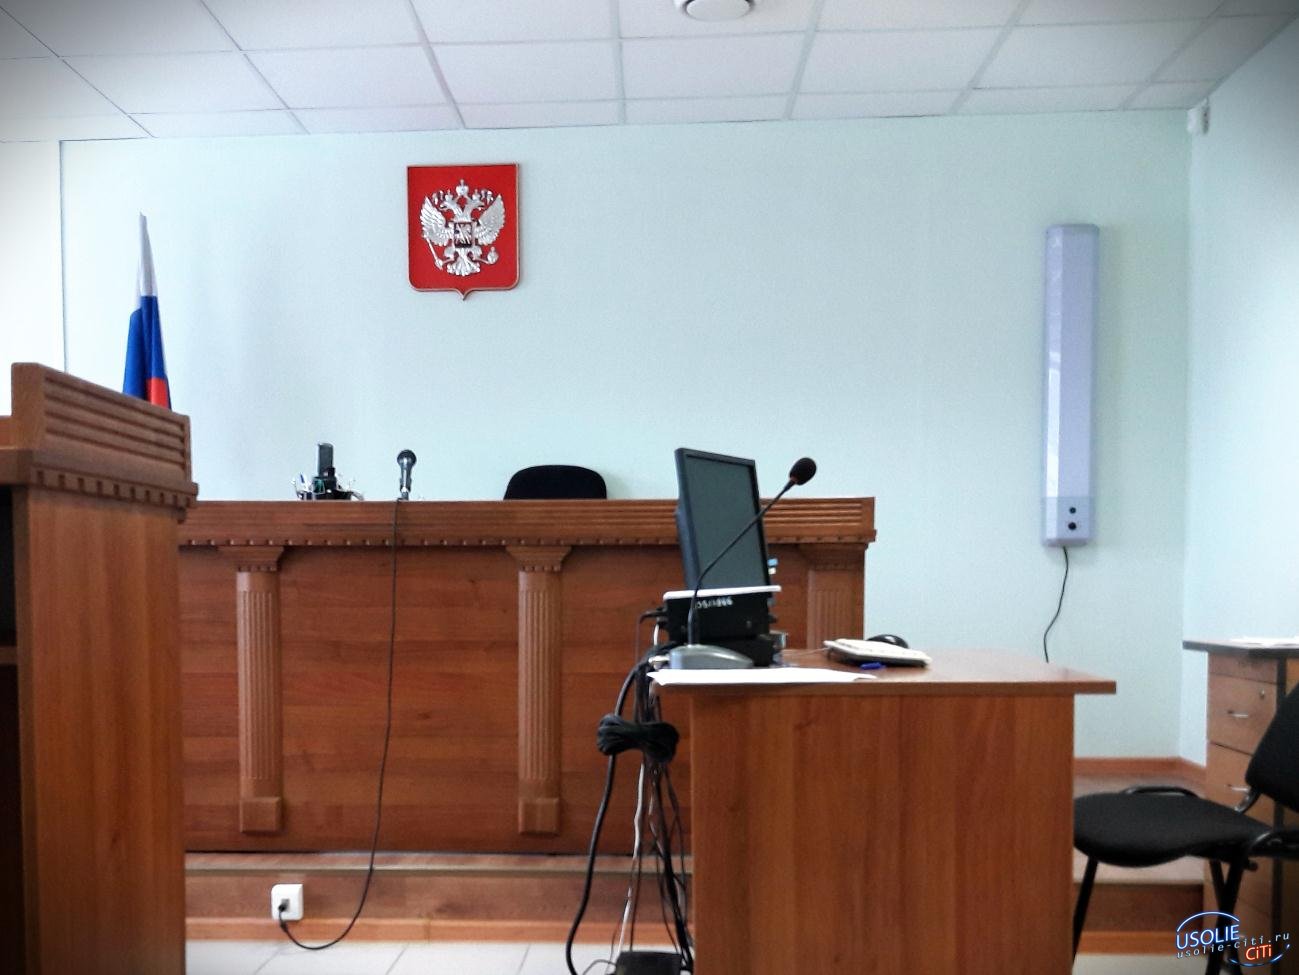 Жителя Тельмы Усольского района осудили за наркотики